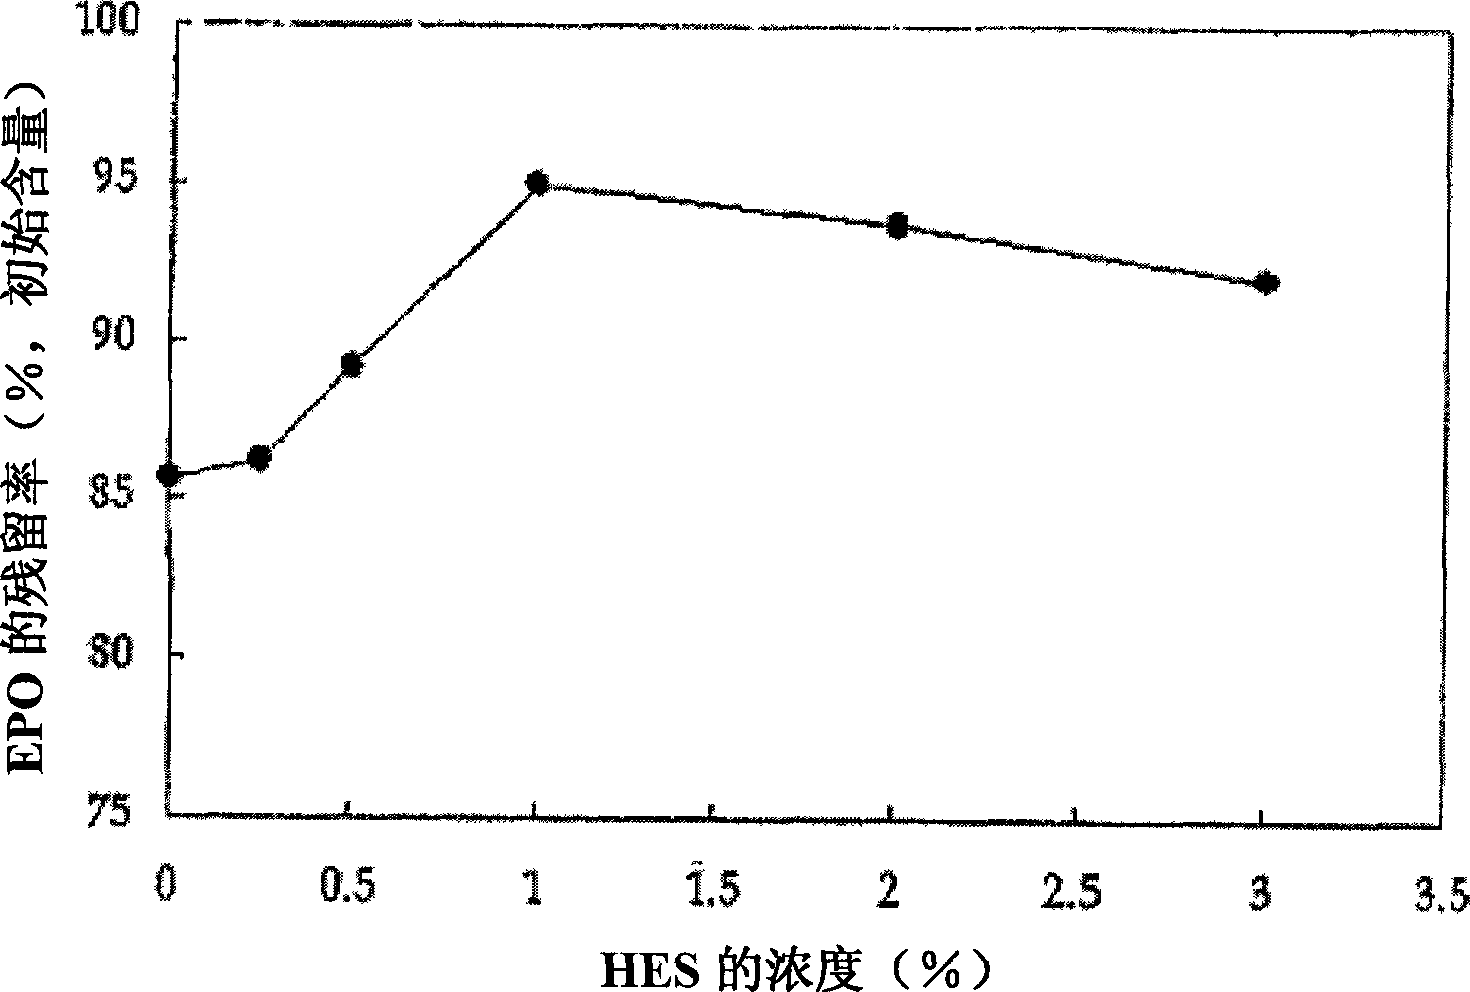 Formulation of albumin-free erythropoietin